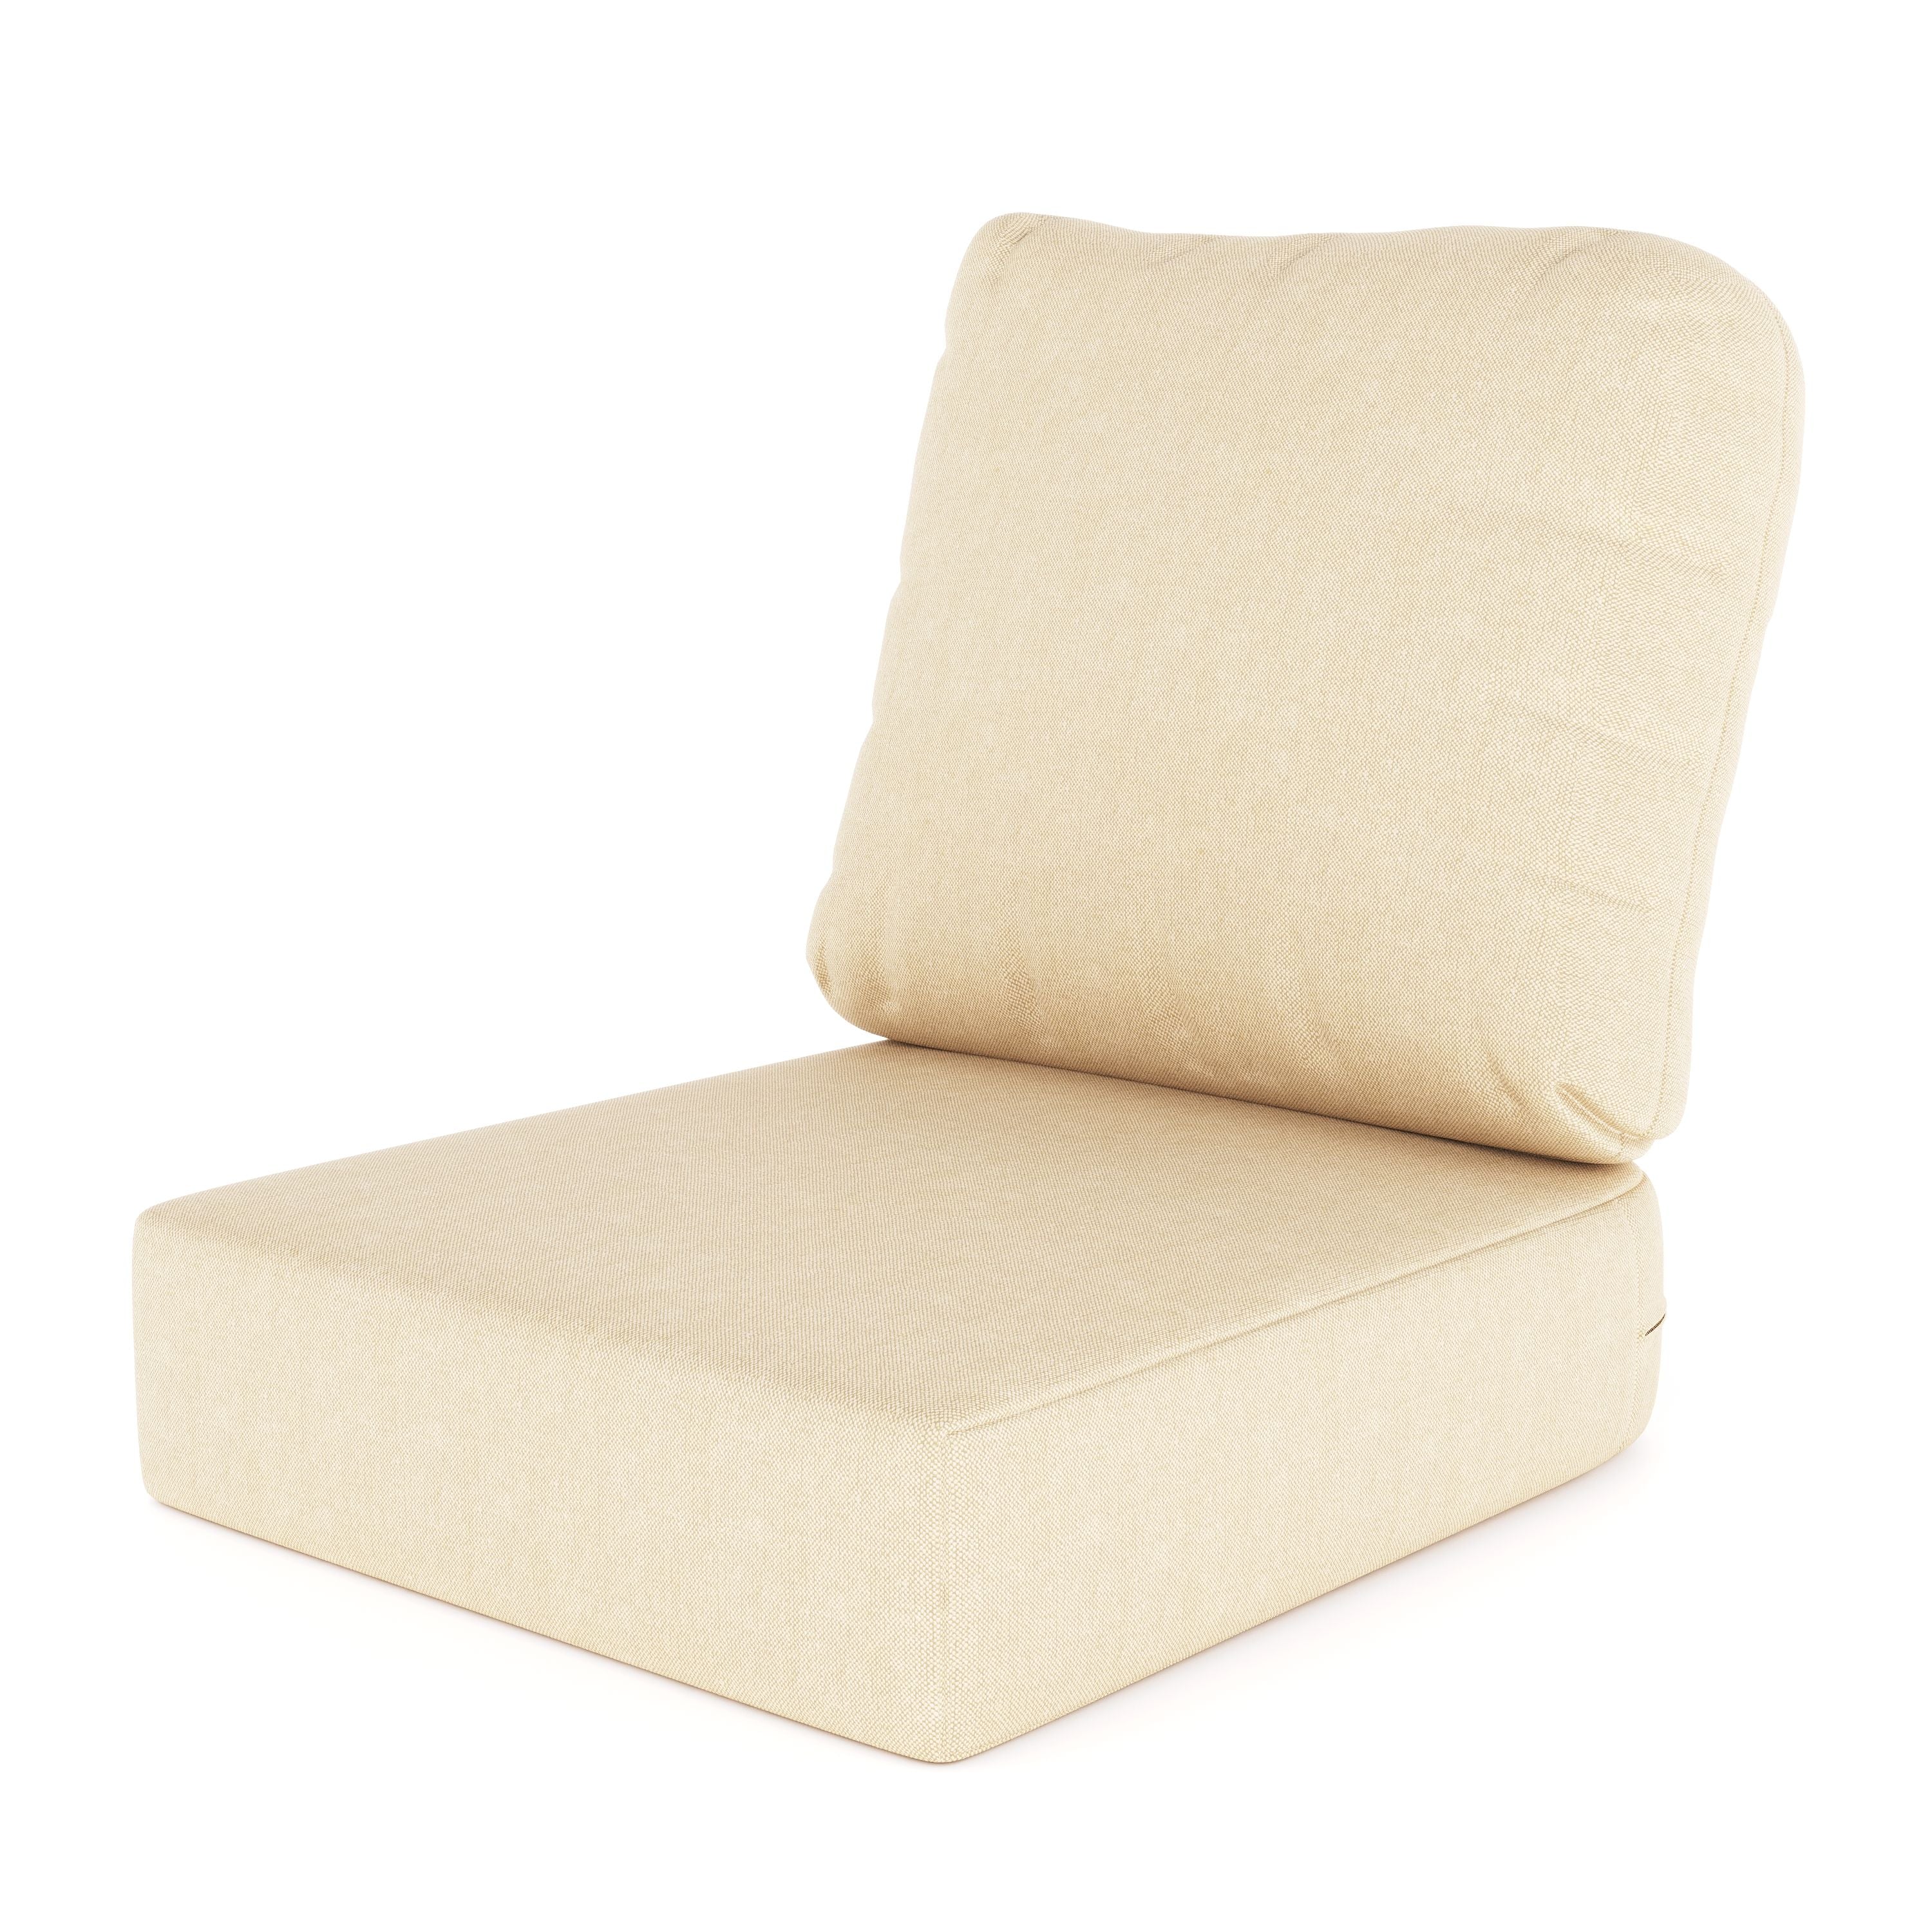 Asiento y respaldo/sofá de asiento profundo/extremos de loveseat derecho e izquierdo - Cojines de repuesto